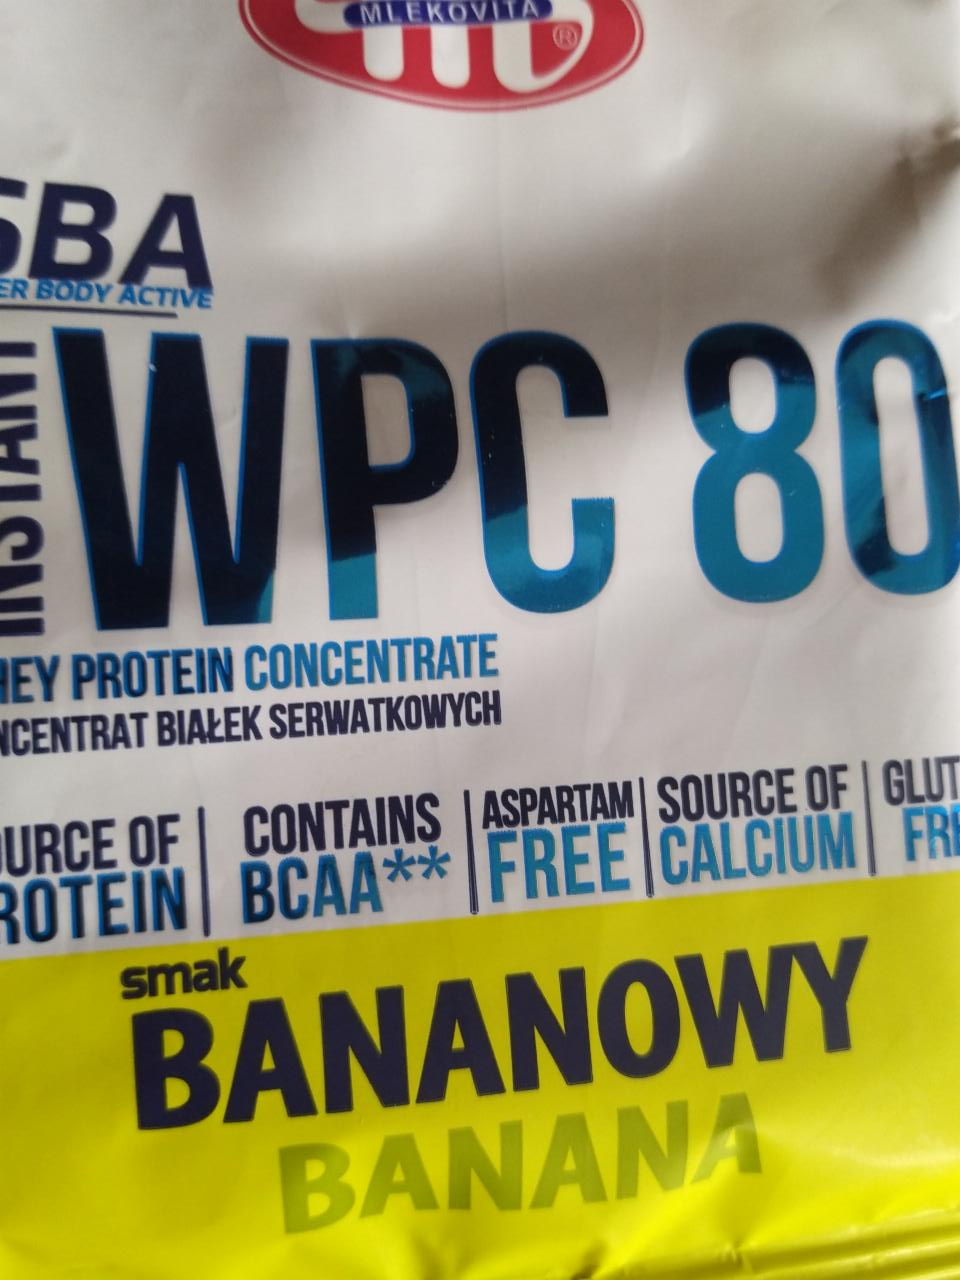 Фото - Super Body Active WPC 80 koncentrat białek serwatkowych instant bananowy Mlekovita